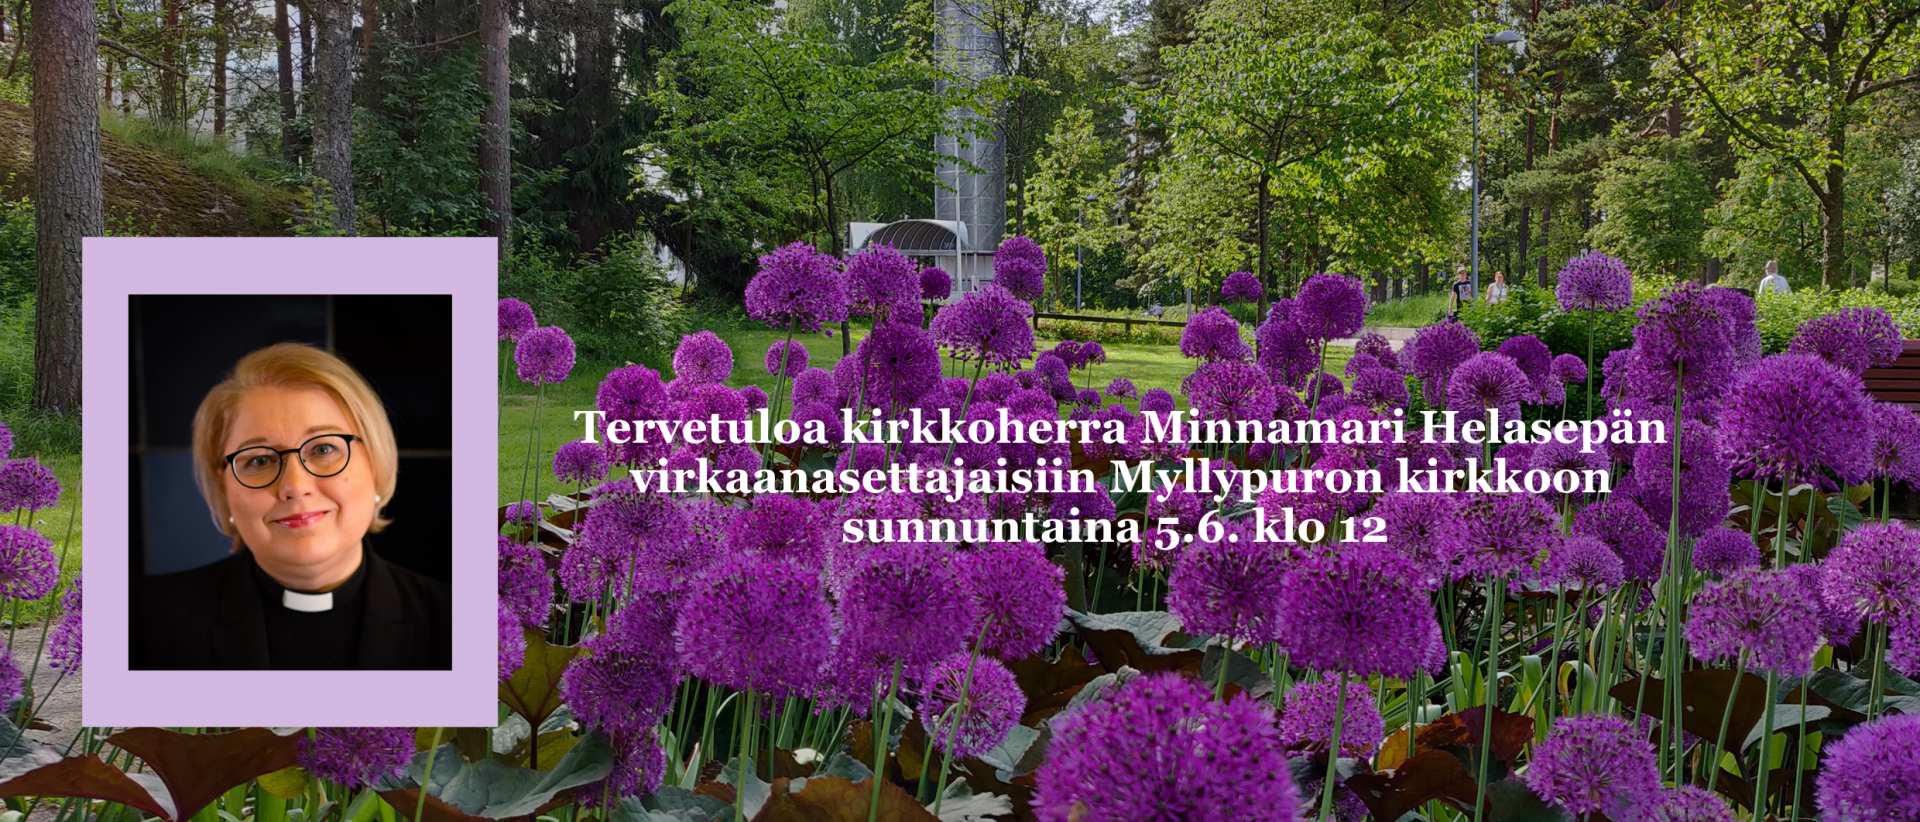 Kutsu kirkkoherra Minnamari Helasepän virkaanasettajaisiin Myllypuron kirkkoon su 5.6. klo 12. Teksti maisemankuvan päällä. Kuvassa violetteja kukkia ja taustalla Myllypuron kirkko